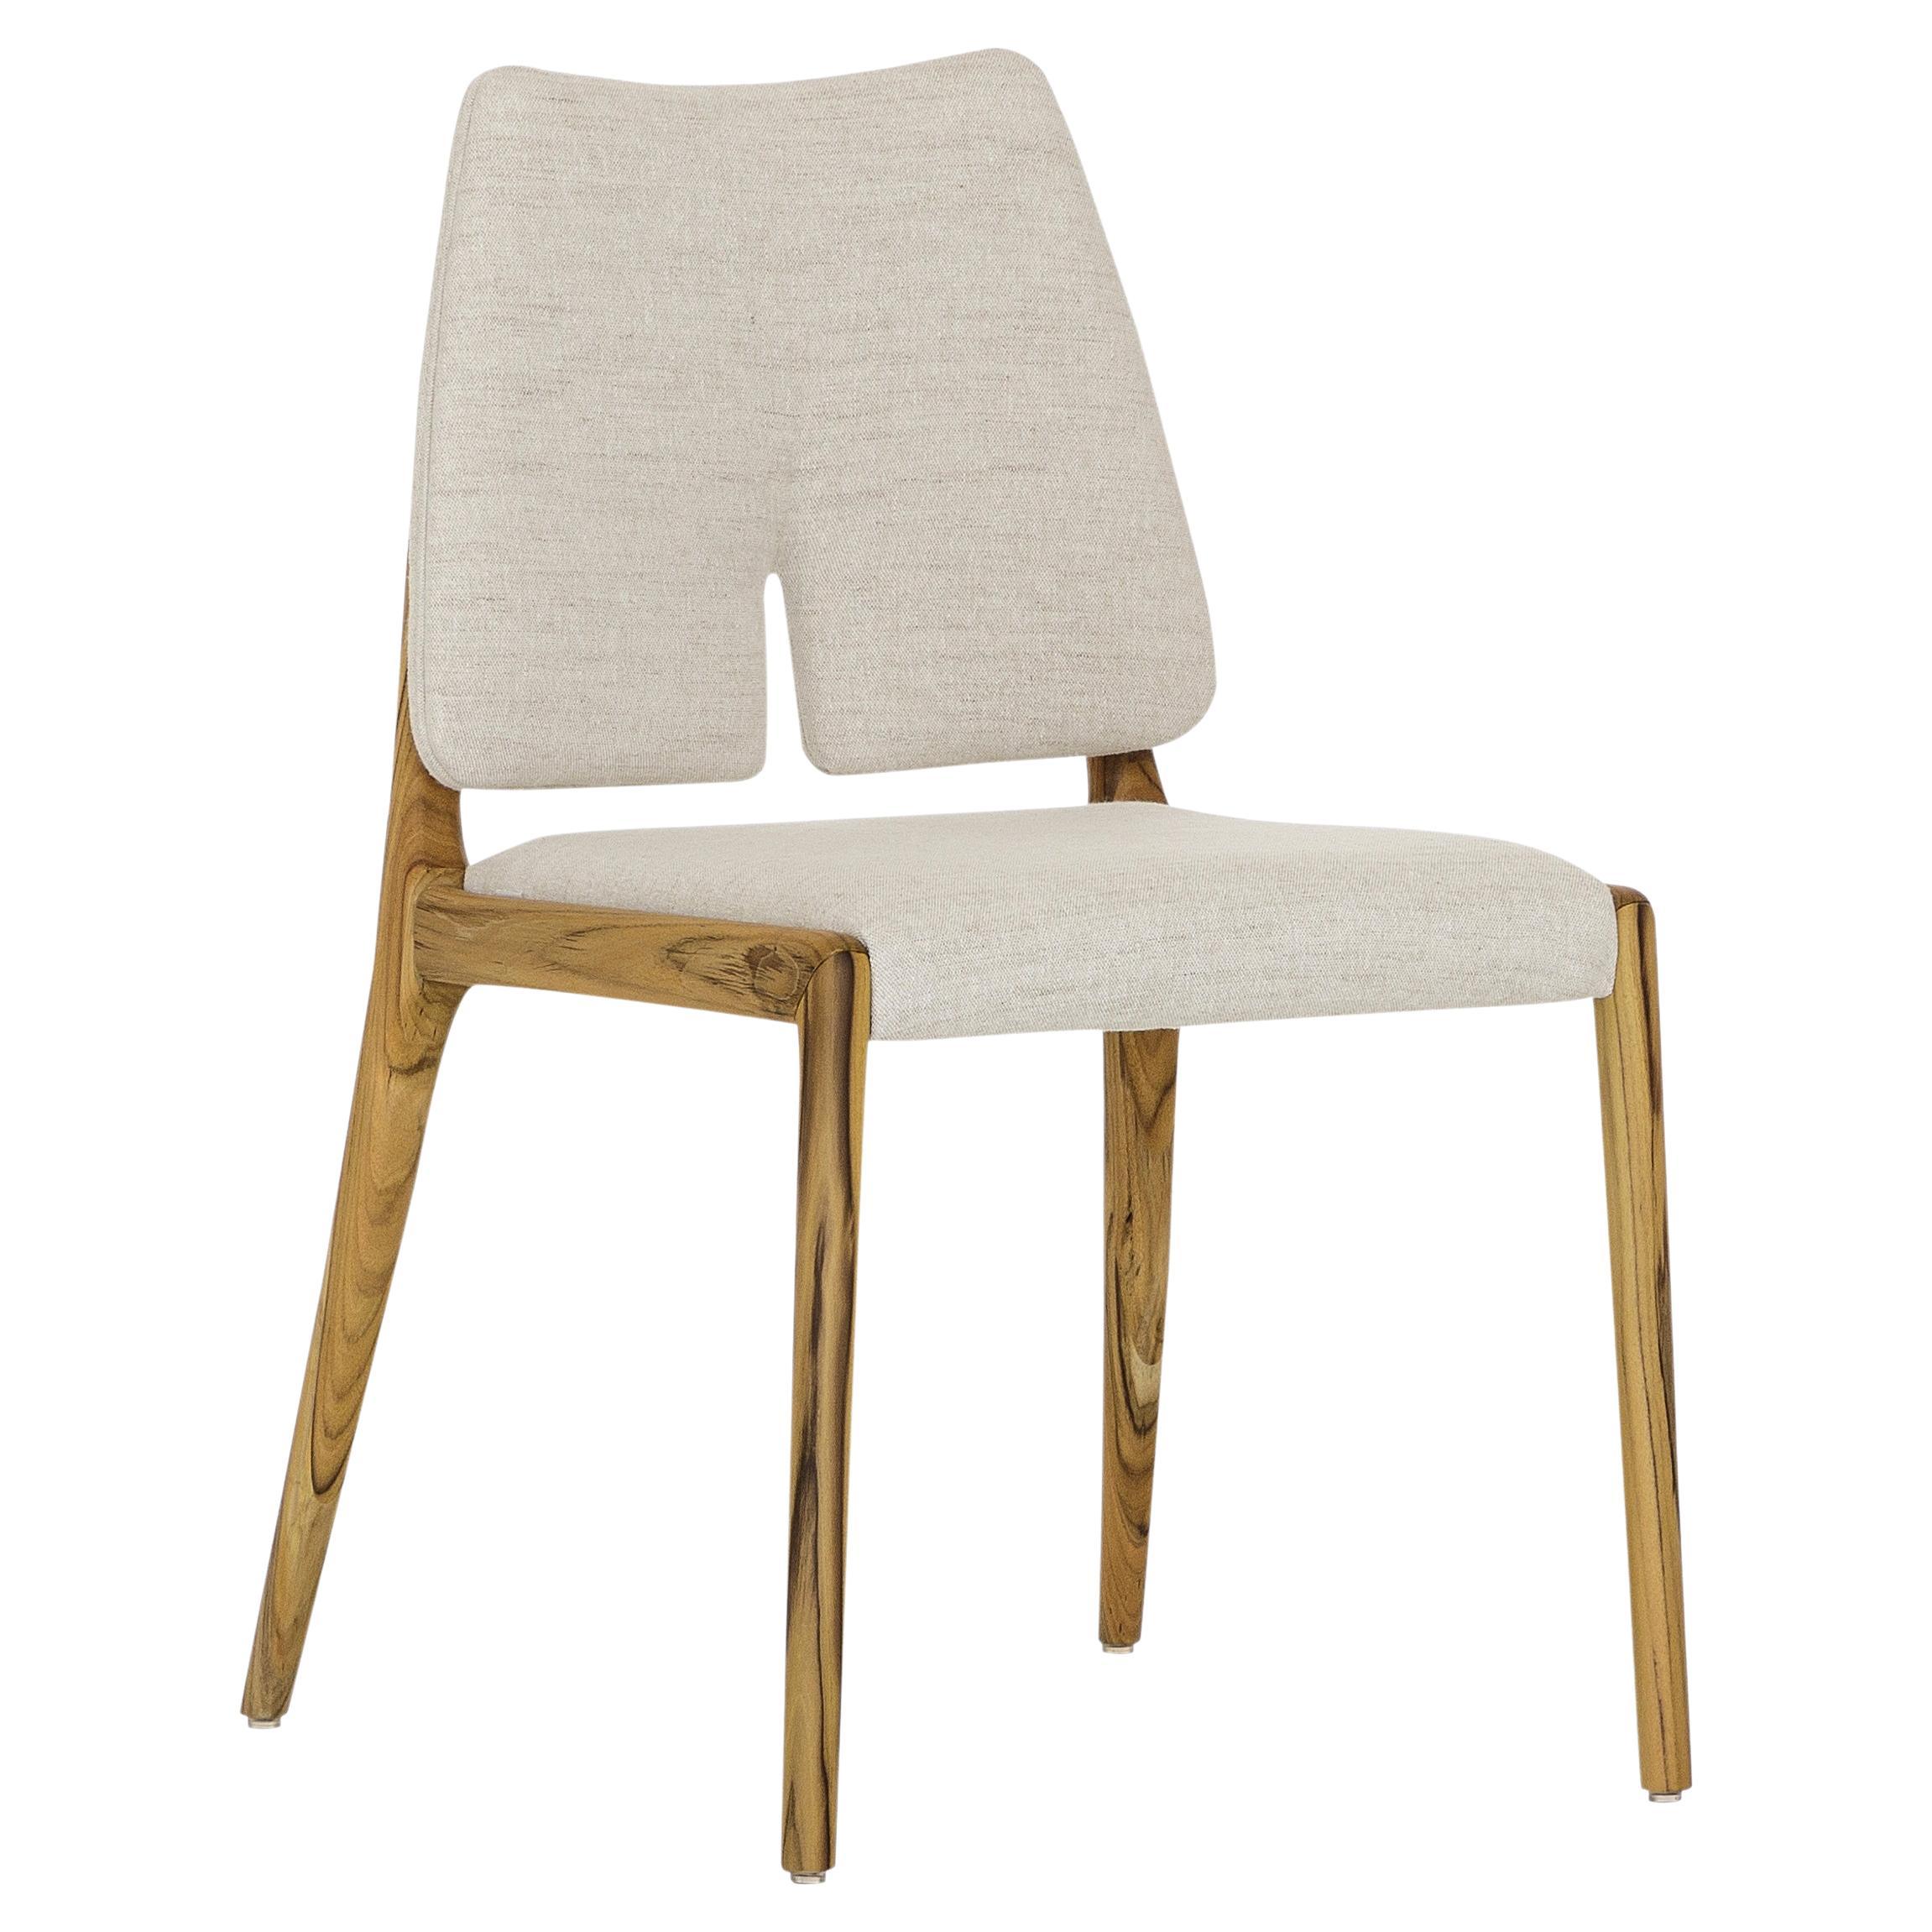 L'équipe créative de Uultis a créé cette chaise de salle à manger pour embellir cet espace familial avec des pieds qui sont en bois dans une finition en teck, en le combinant avec un beau tissu de coton beige clair. Il s'agit d'une chaise conçue